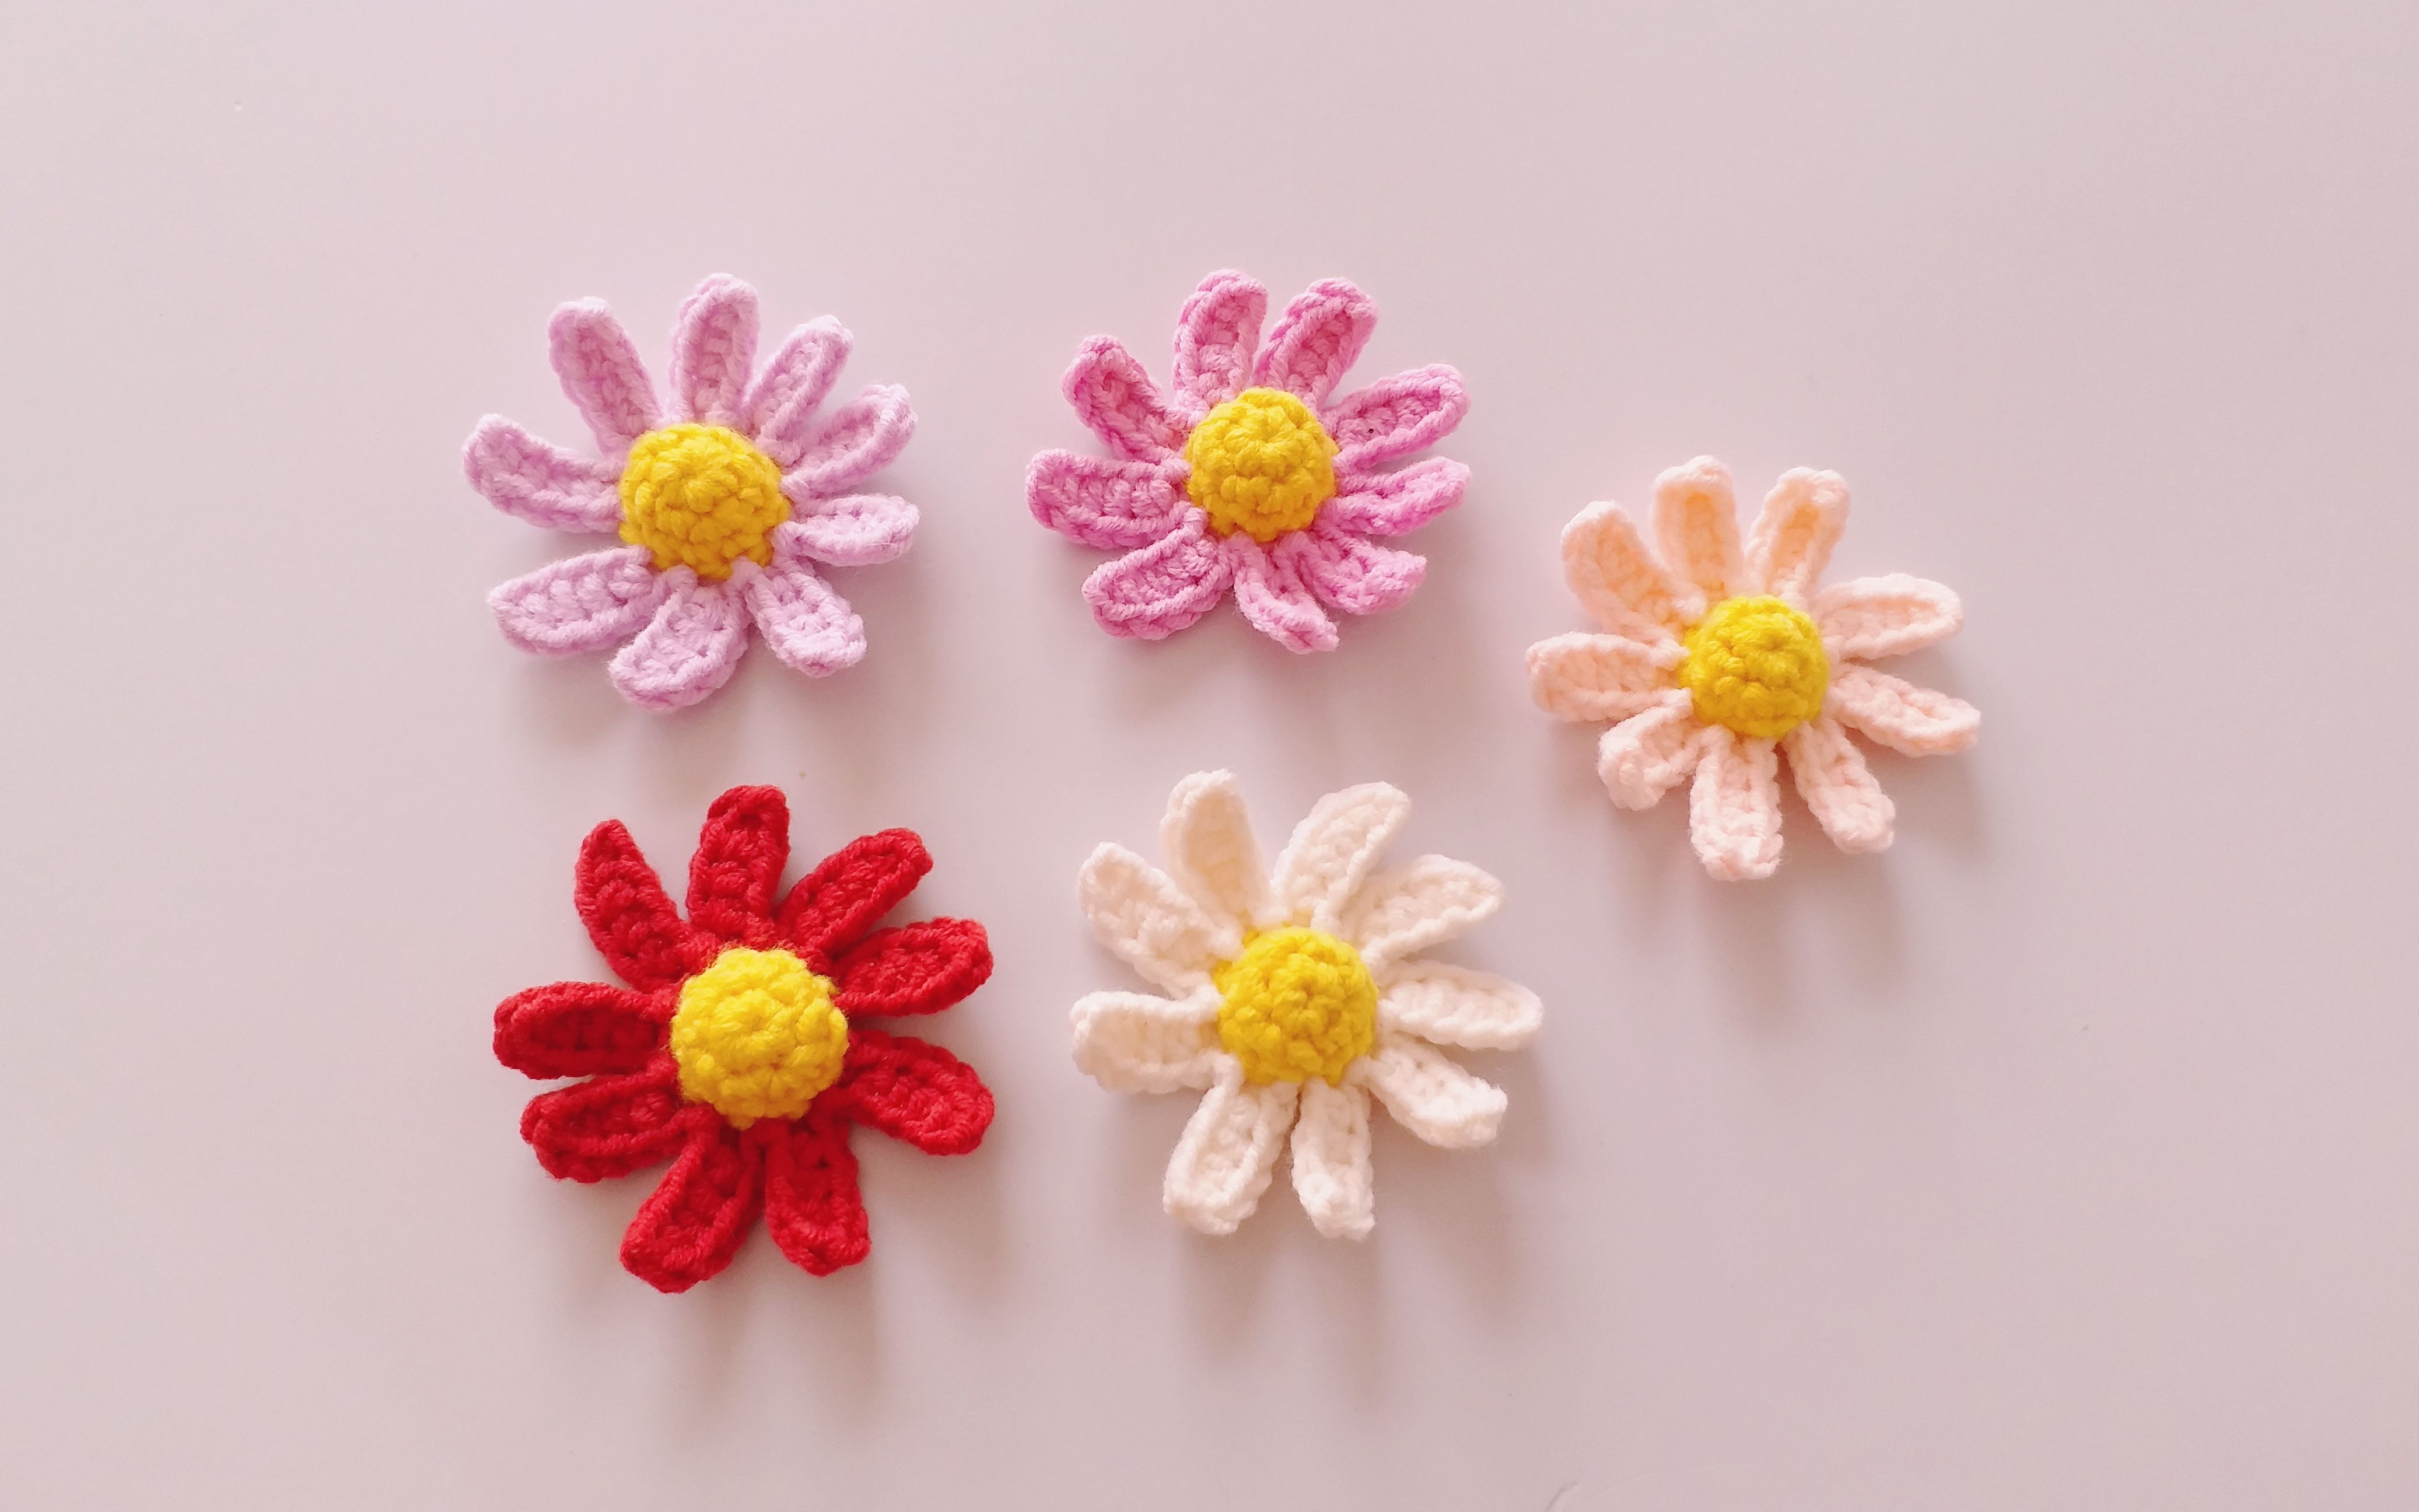 钩针编织 菊花装饰花朵 可爱活力的小雏菊